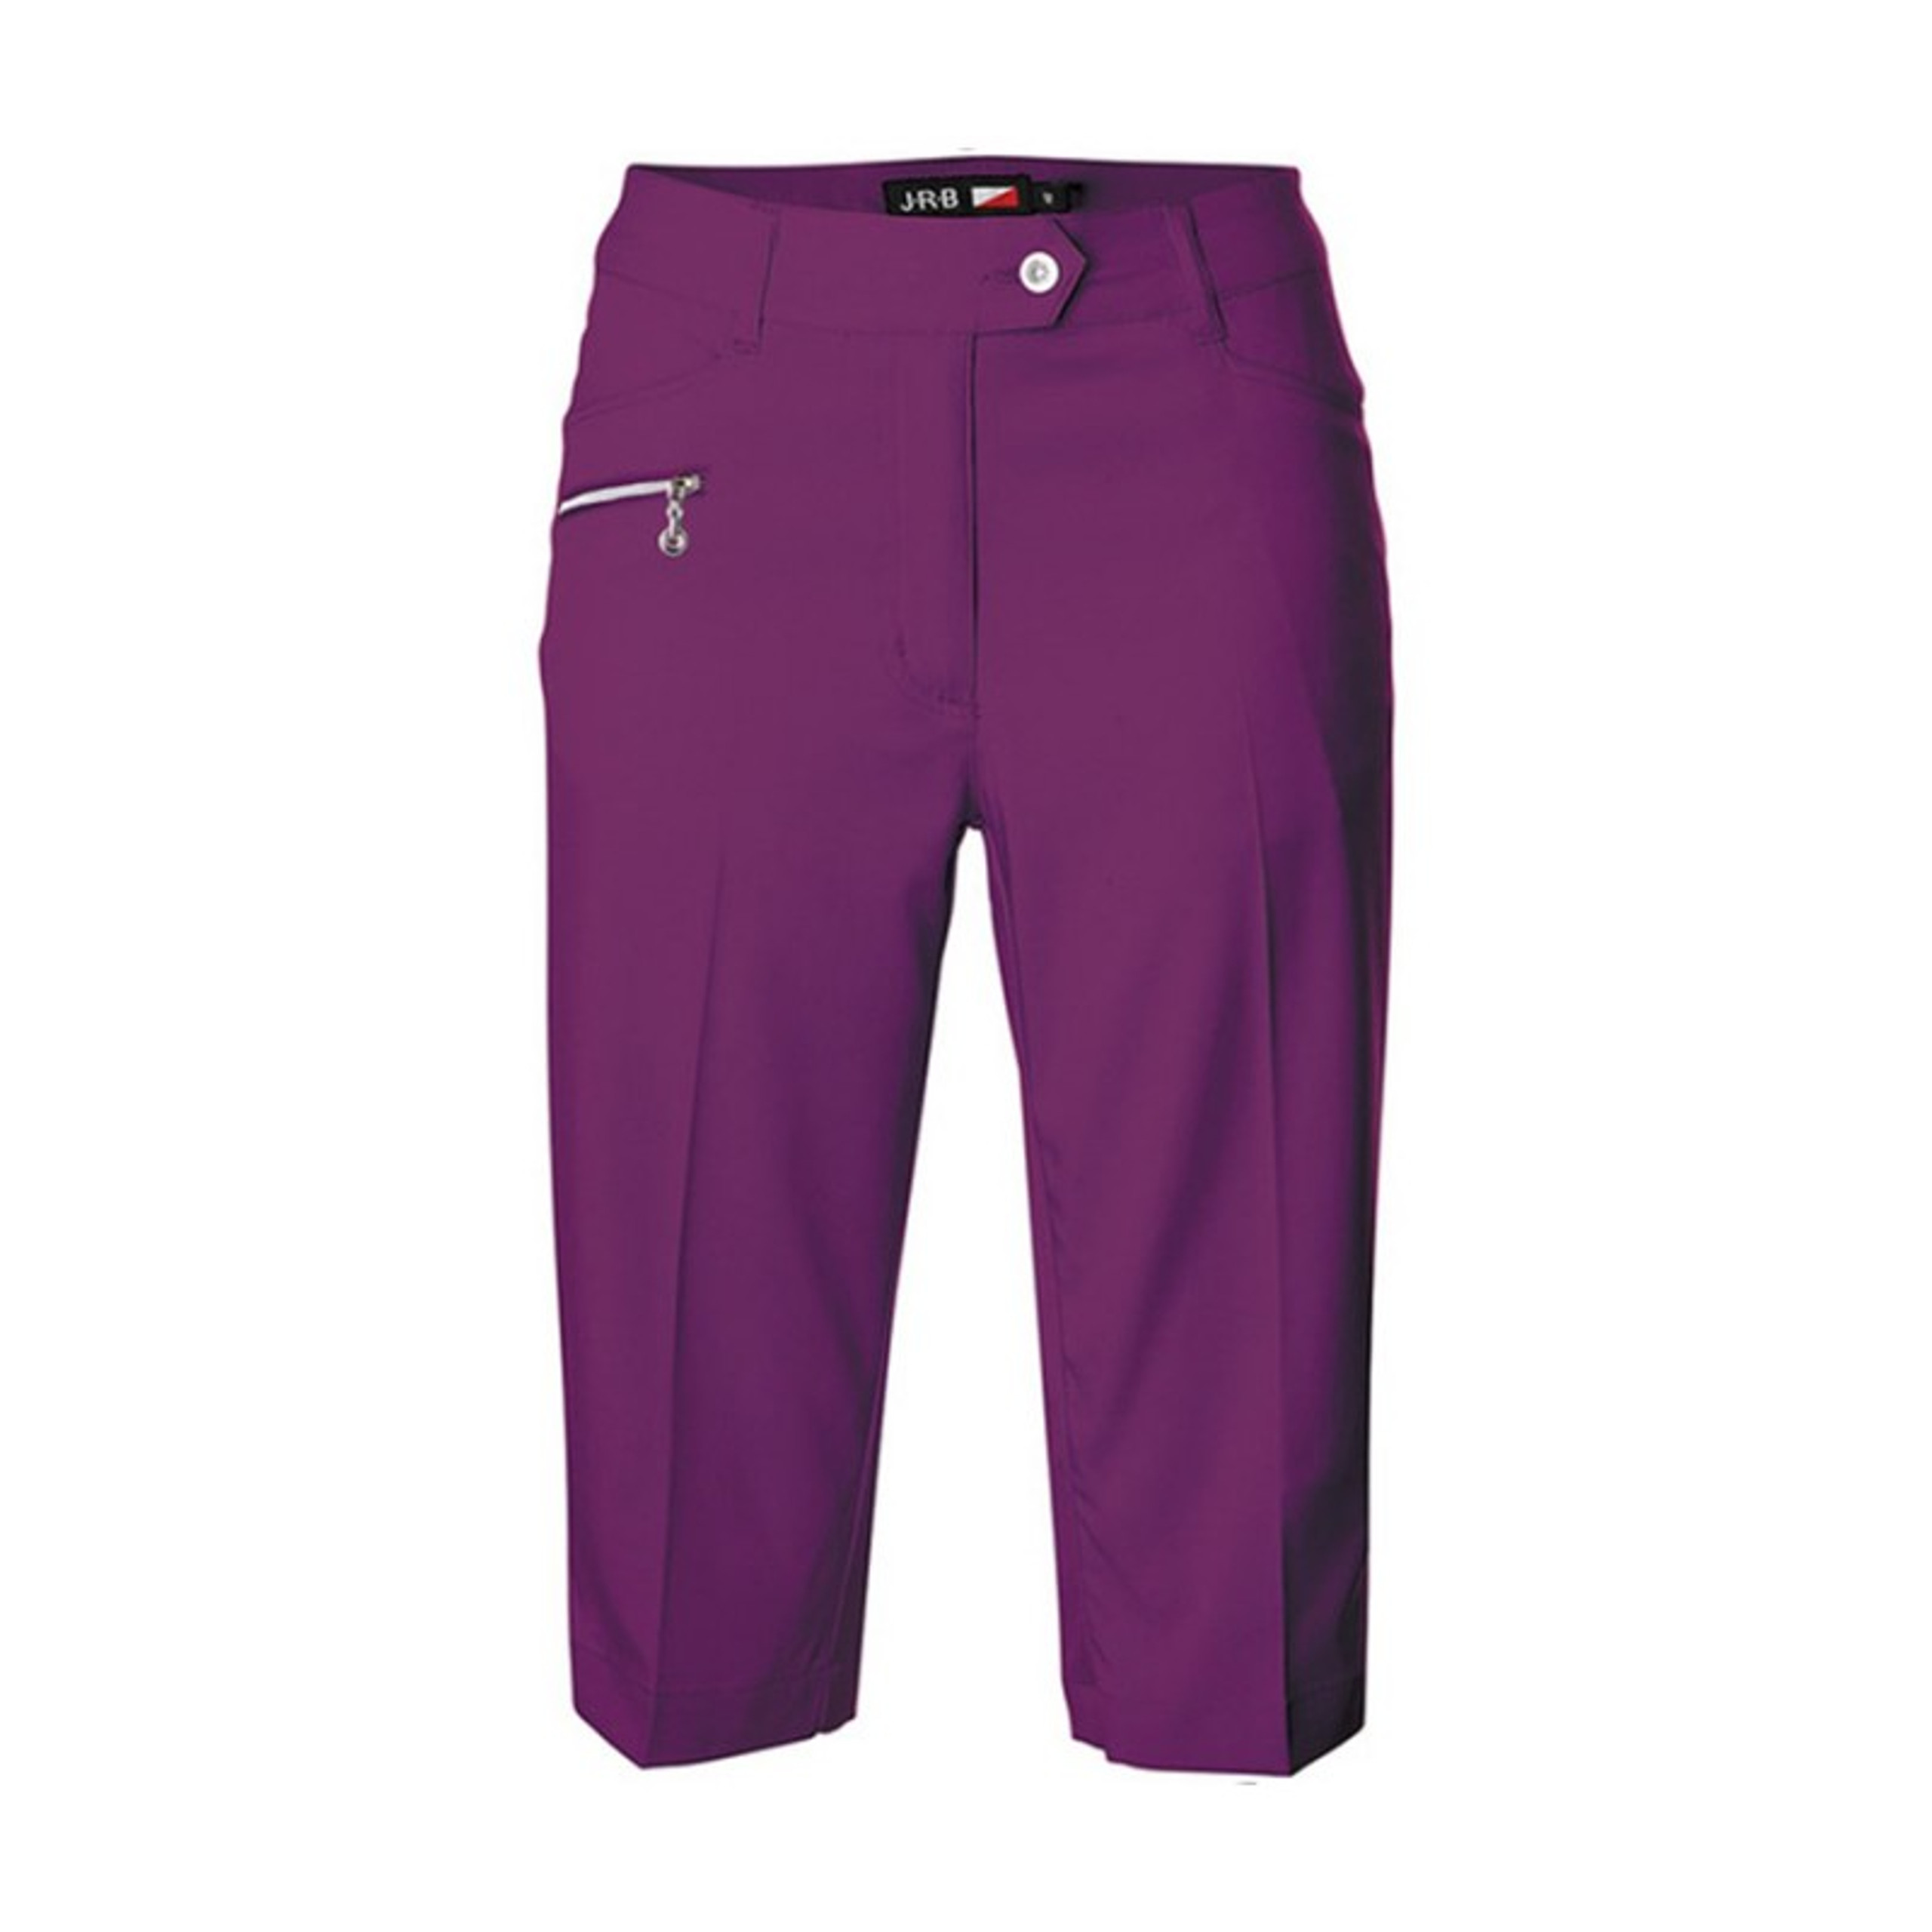 JRB Women's Golf City Shorts - Grape - One Up Golf